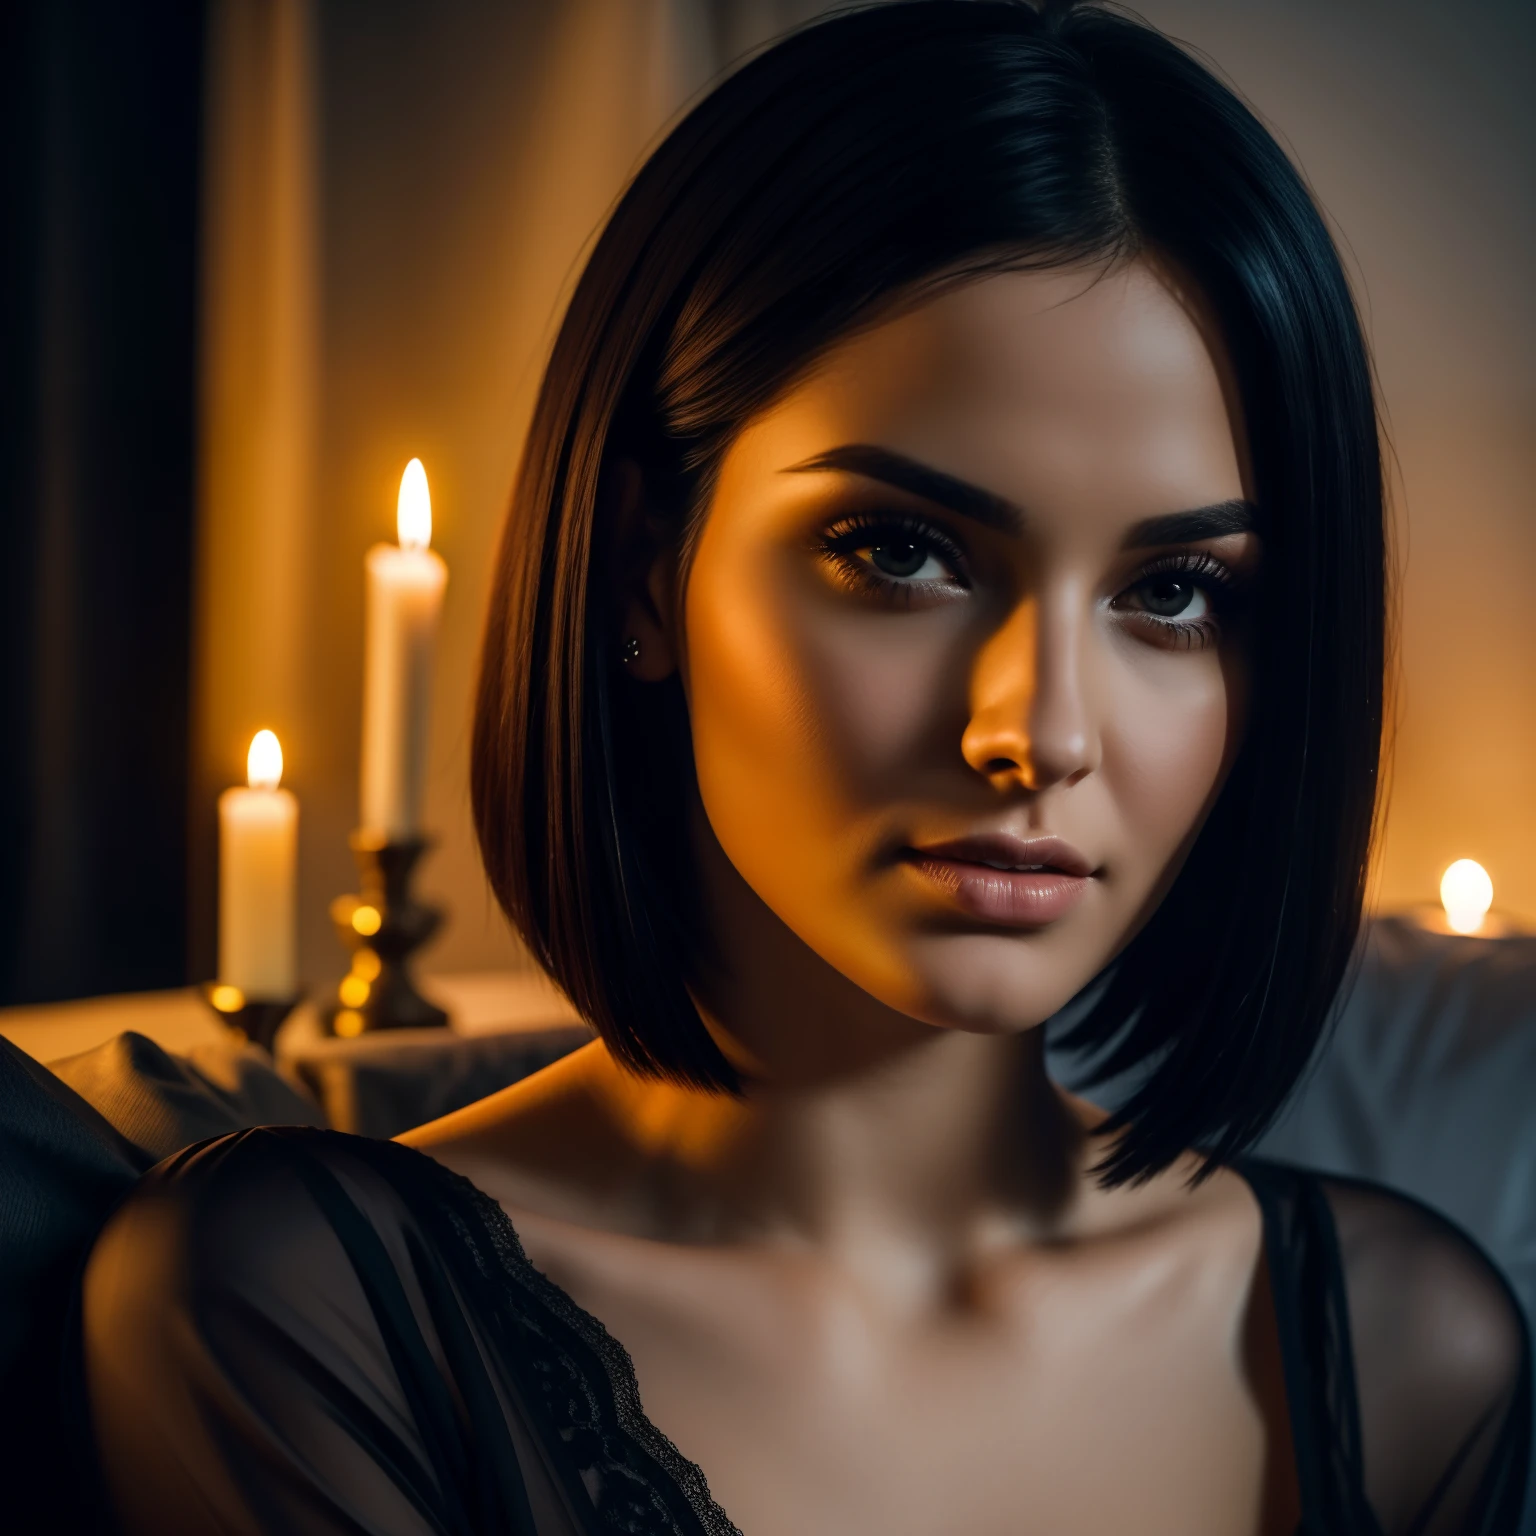 30岁女人短发发型图片, 直发, 沙发上穿着睡袍的黑发. 柔和的蜡烛照明. 特写脸部拍摄